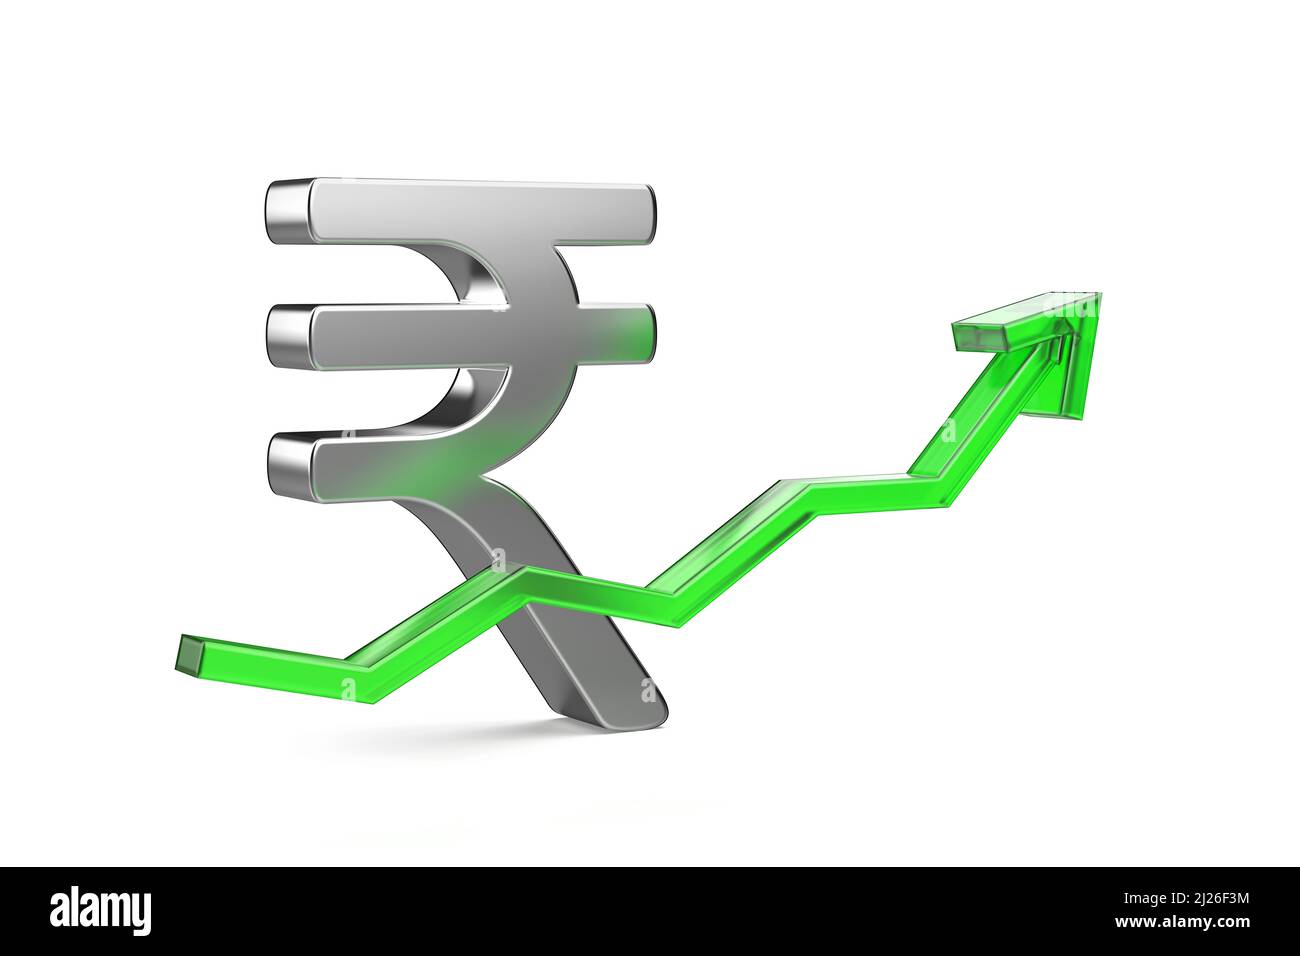 Erhöhung des Wertes der indischen Rupie Währung, Konzept Bild Stockfoto